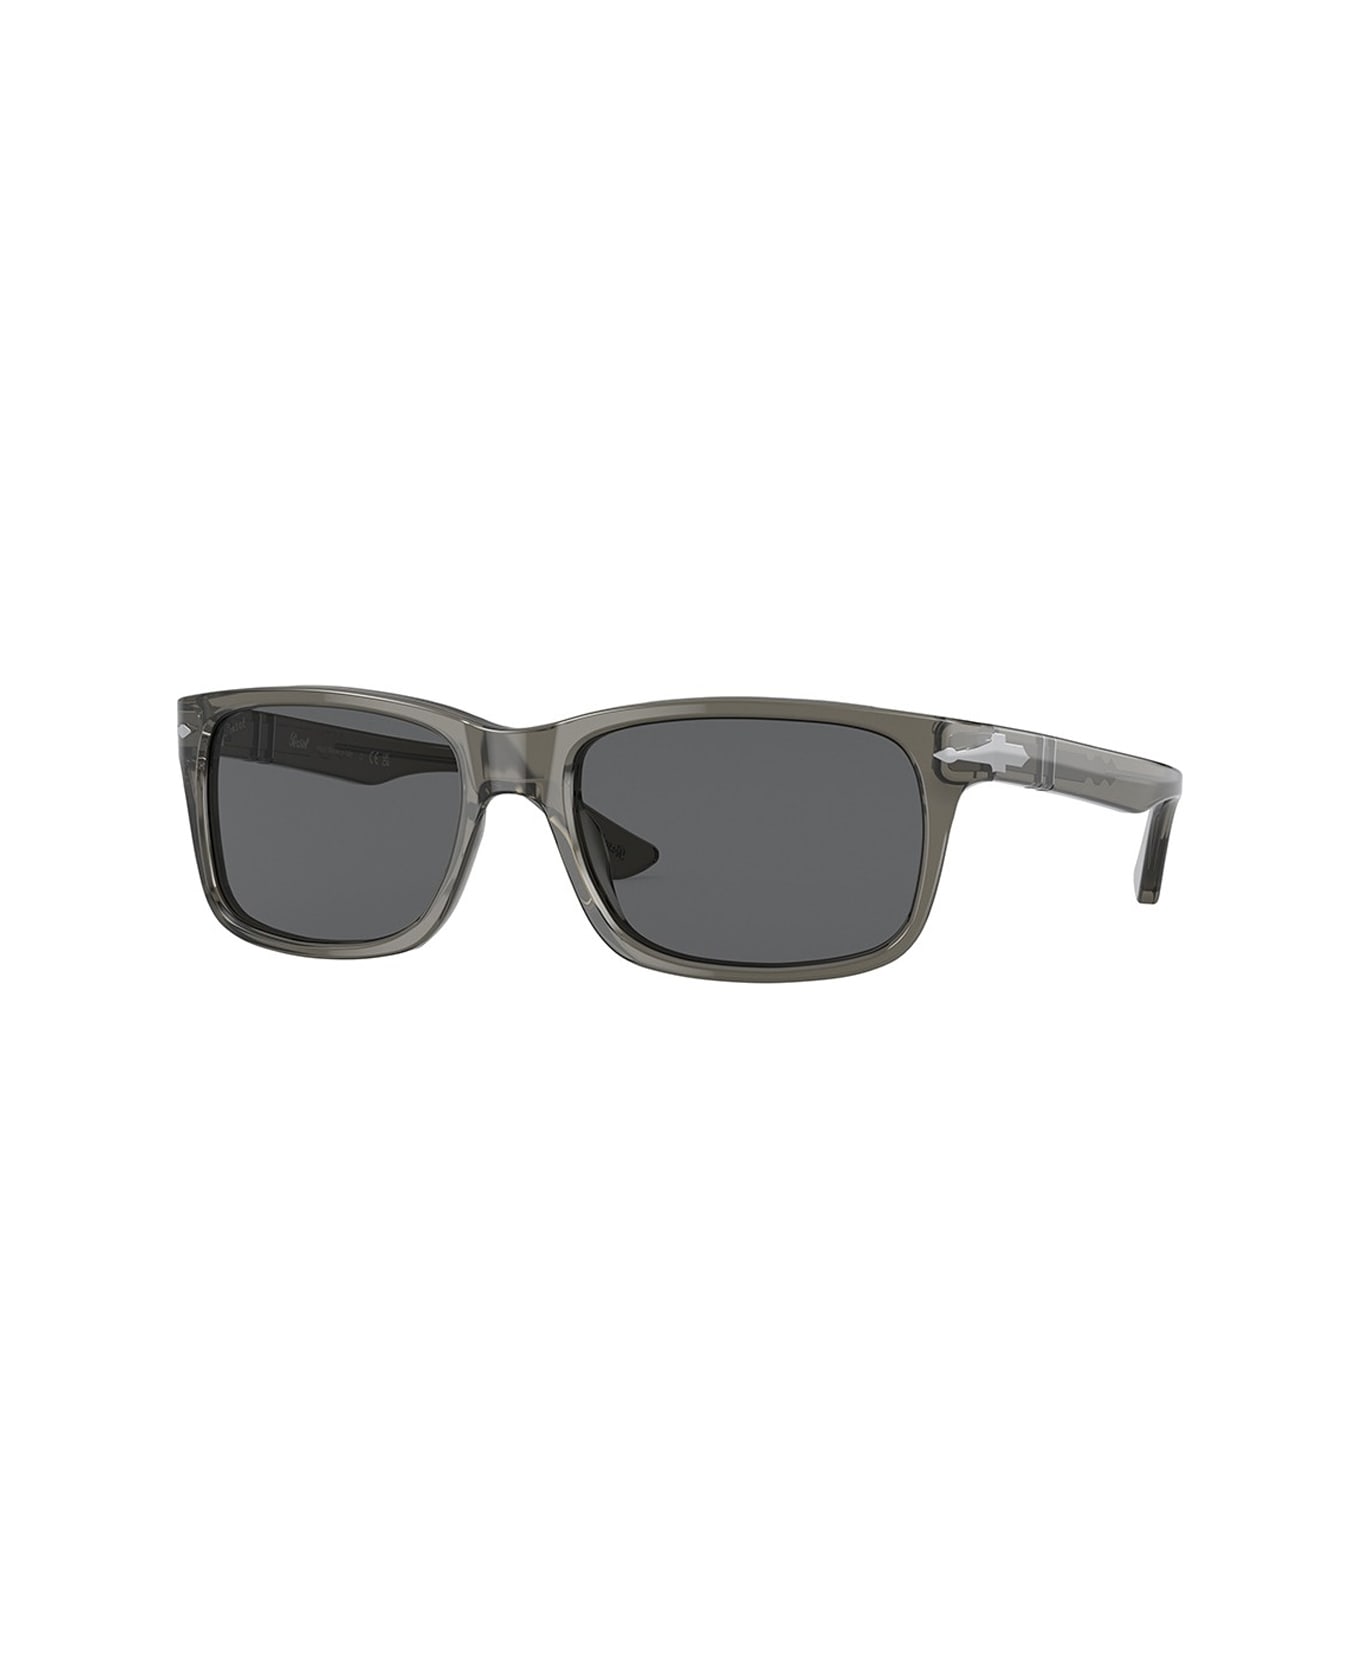 Persol Po3048s 1103b1 Sunglasses - Grigio